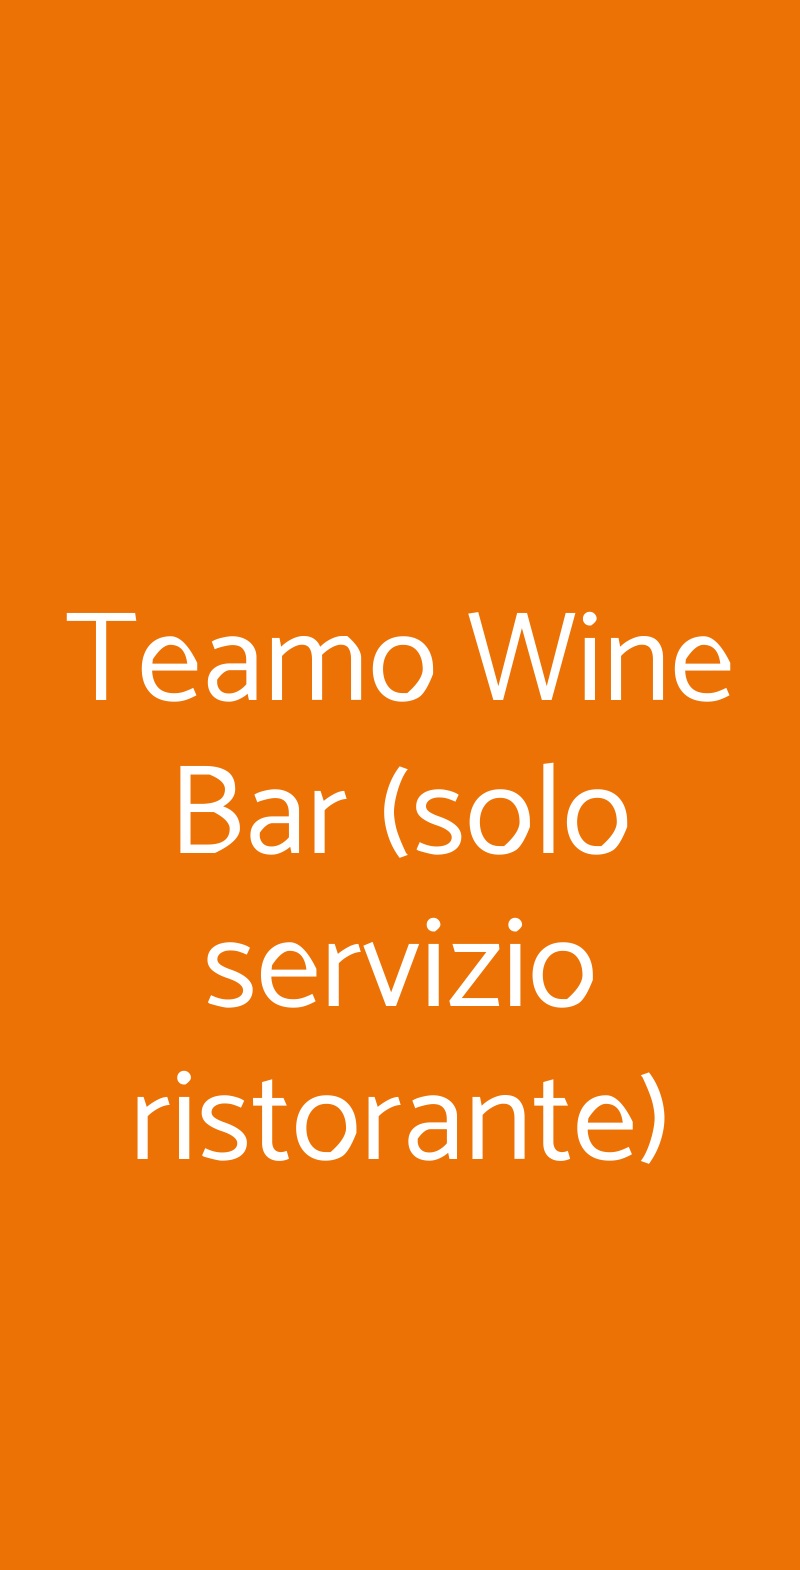 Teamo Wine Bar (solo servizio ristorante) San Marco, Venezia menù 1 pagina